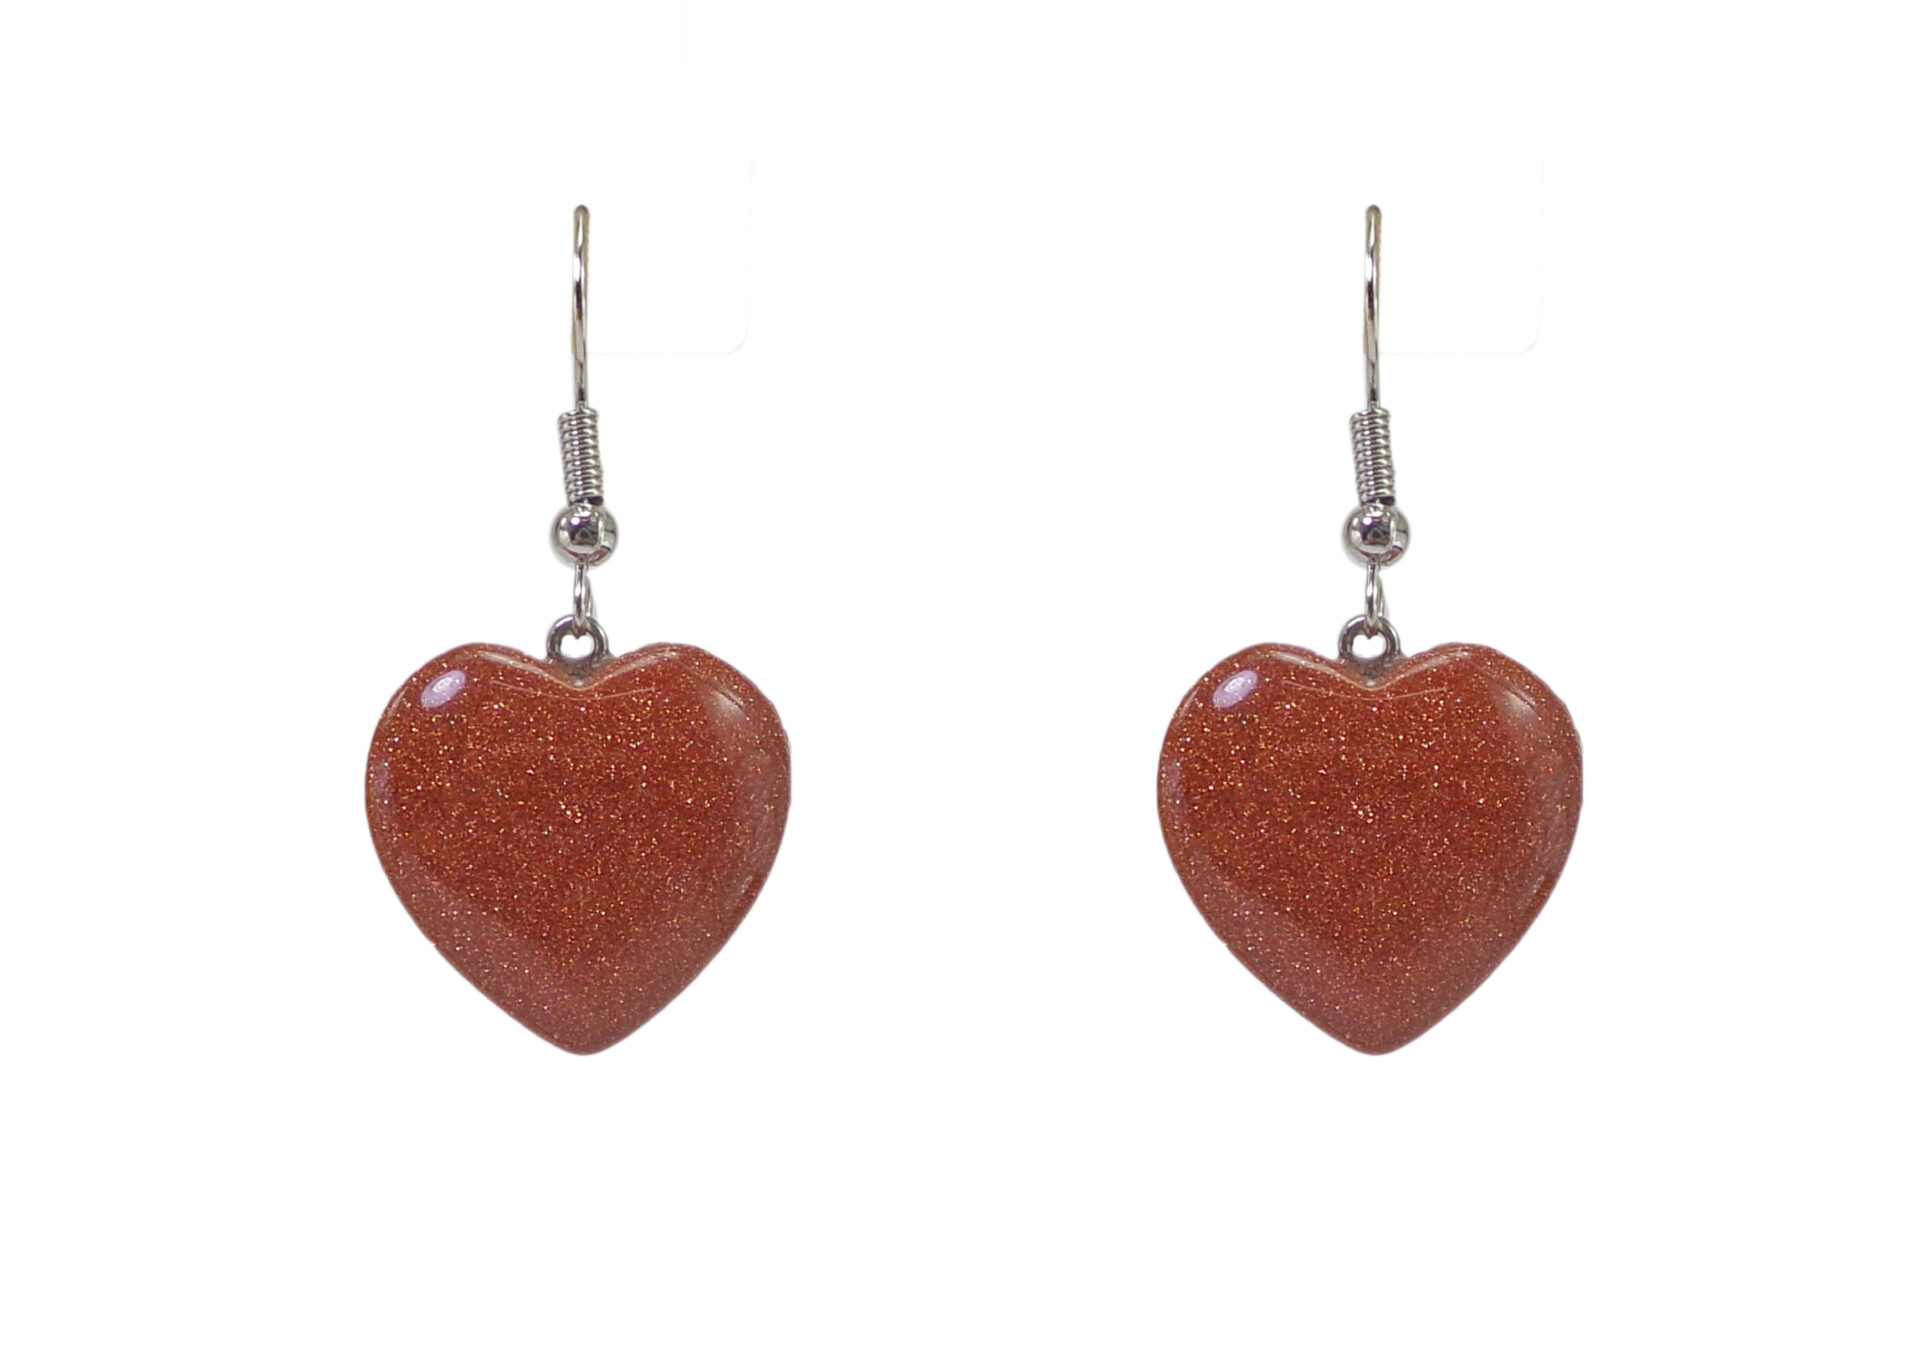 Sandstone Heart Shaped Earrings With Hooks